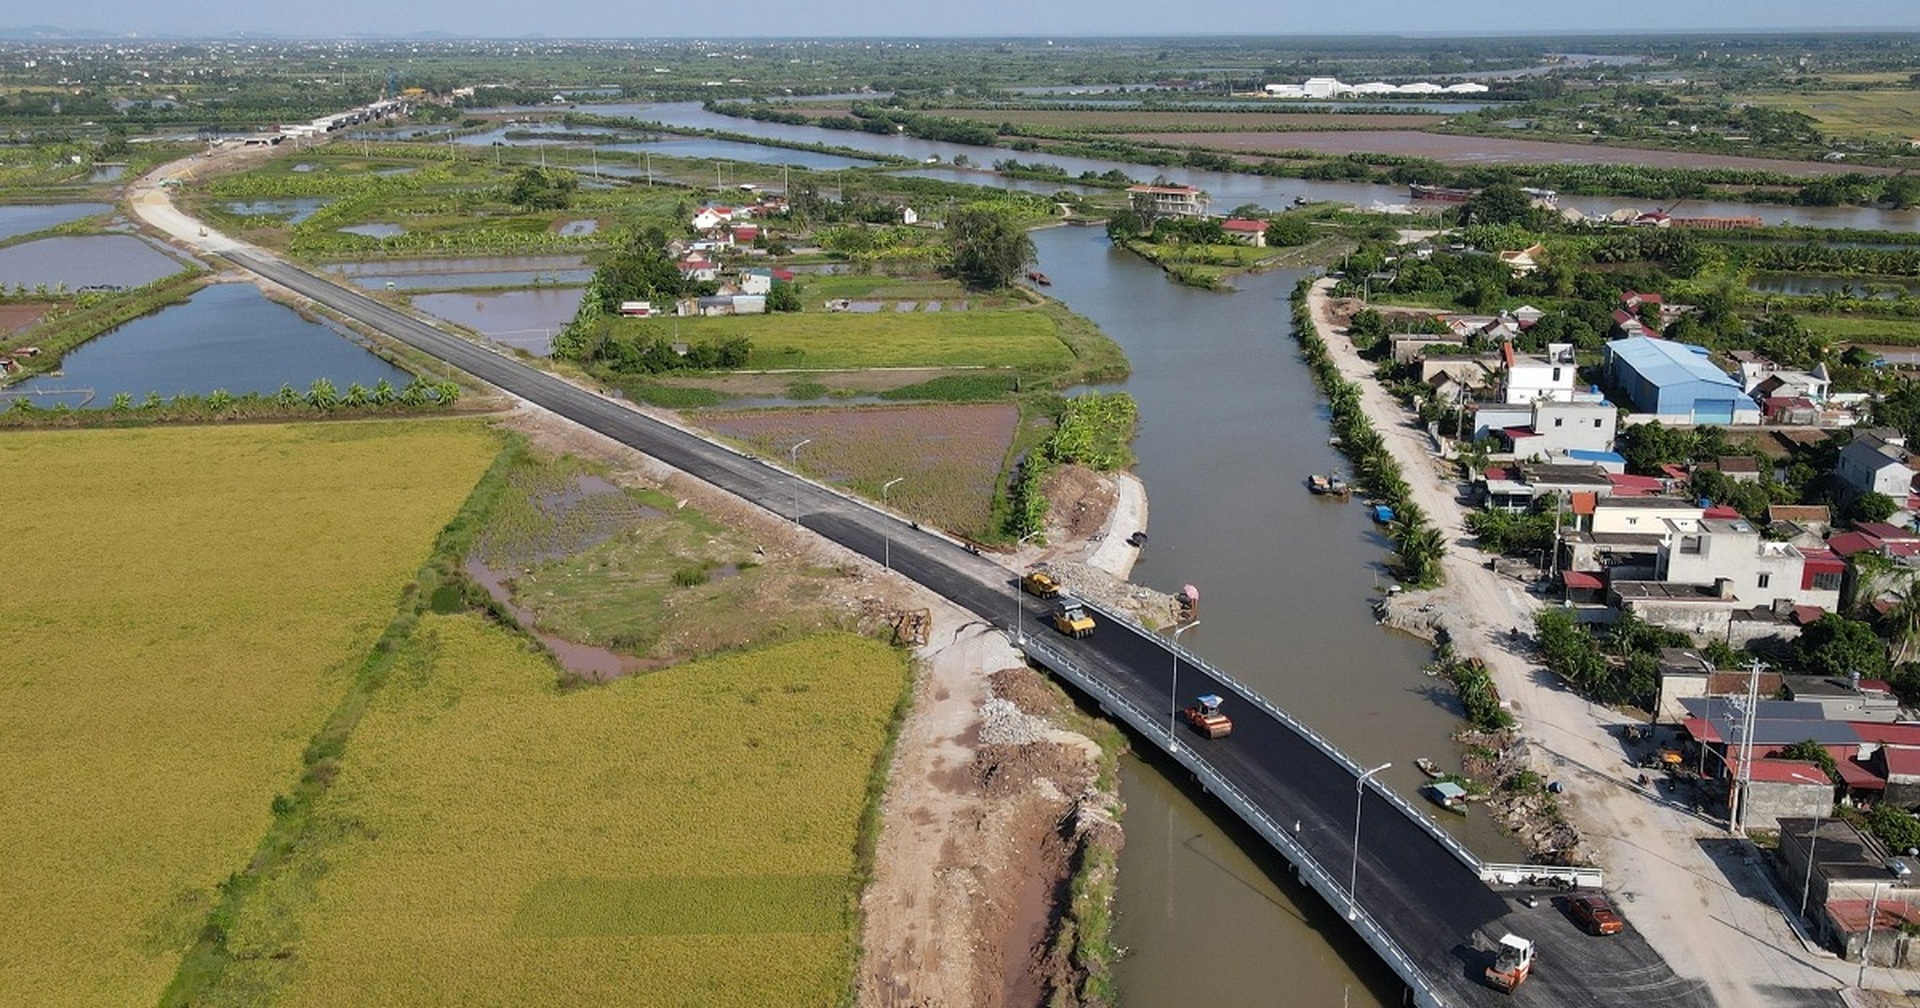 Hải Phòng: Tuyến đường trị giá hơn 1.300 tỷ đồng nối đôi bờ sông Thái Bình - 3